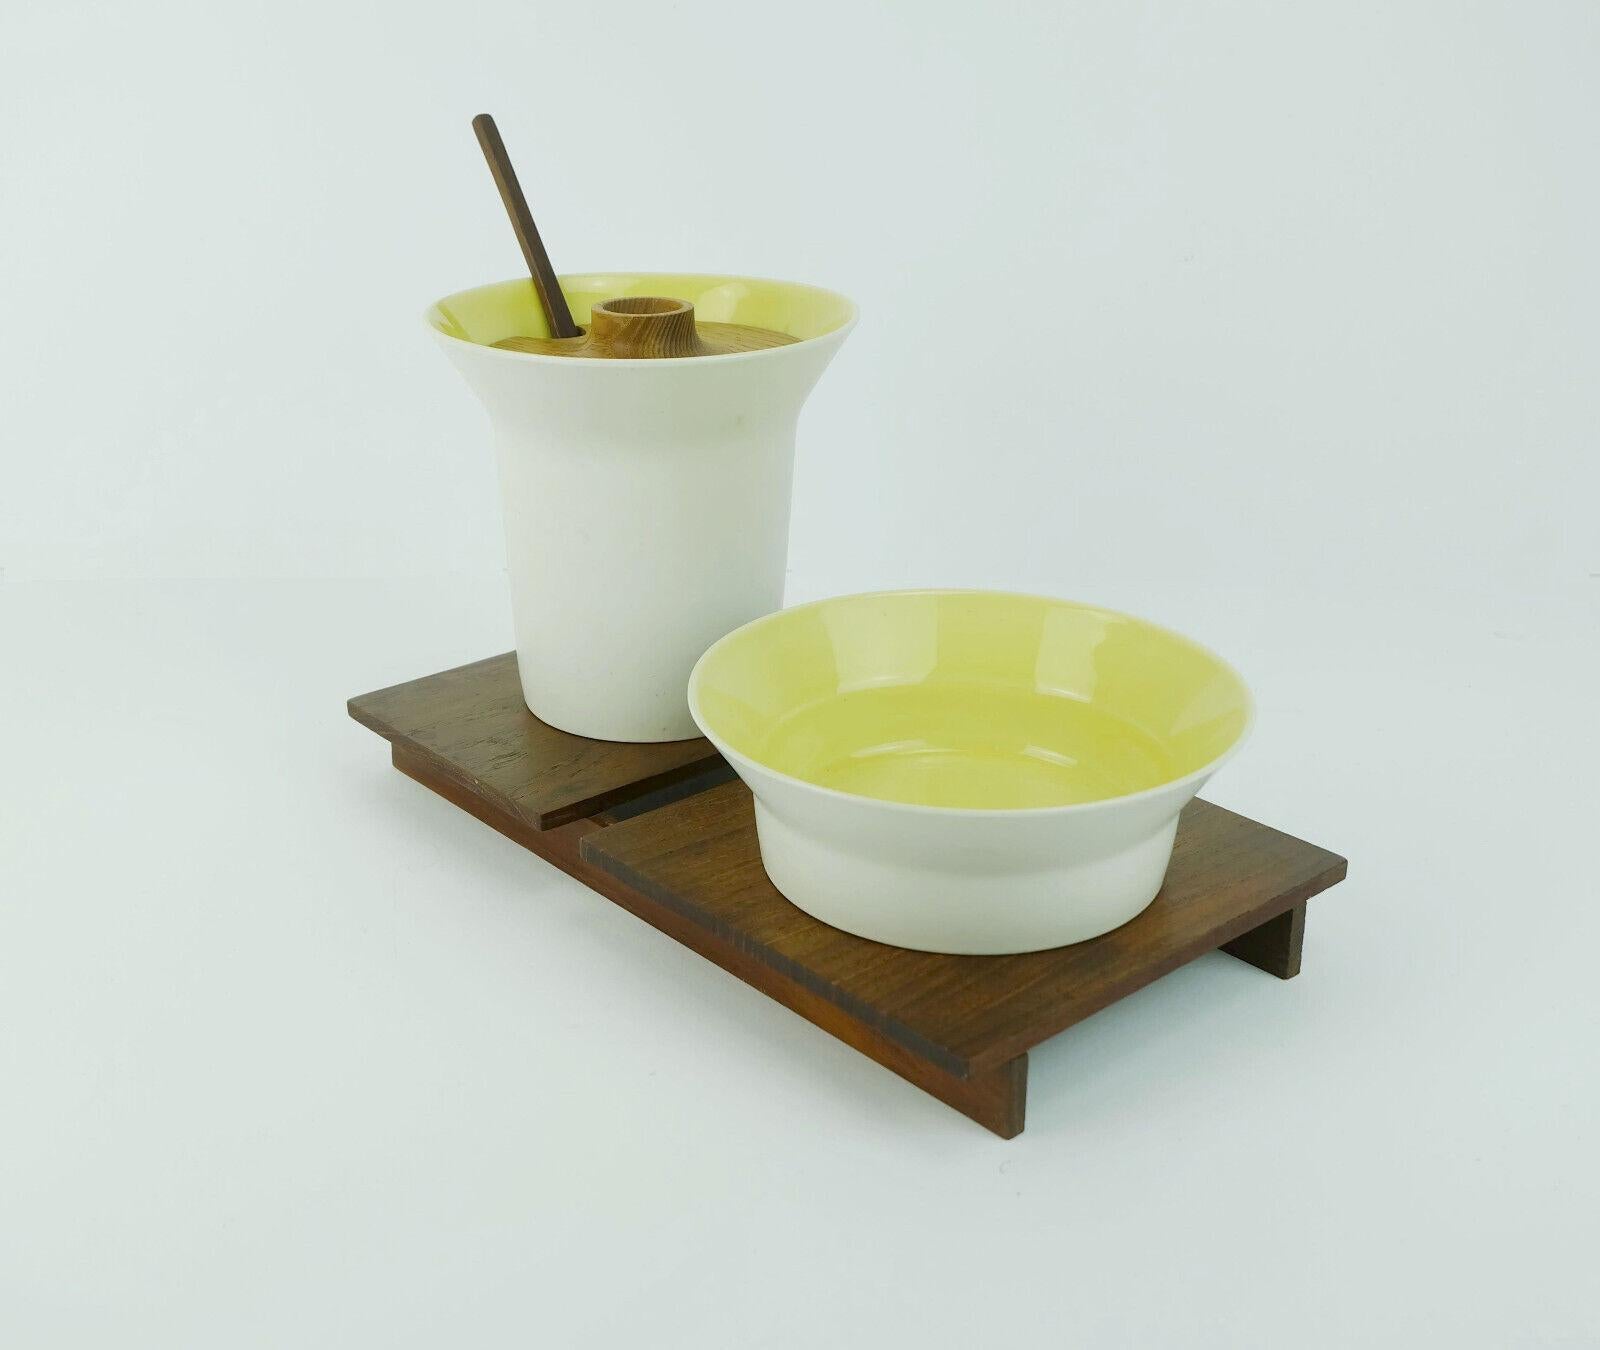 Sehr schöne und seltene Serie aus den 1960er Jahren. Einfacher, puristischer, japanischer Stil. Das Set besteht aus 2 Gefäßen, das hohe Gefäß ist für Honig, das niedrige für Zucker oder Marmelade gedacht. Die Gefäße sind aus feiner Keramik